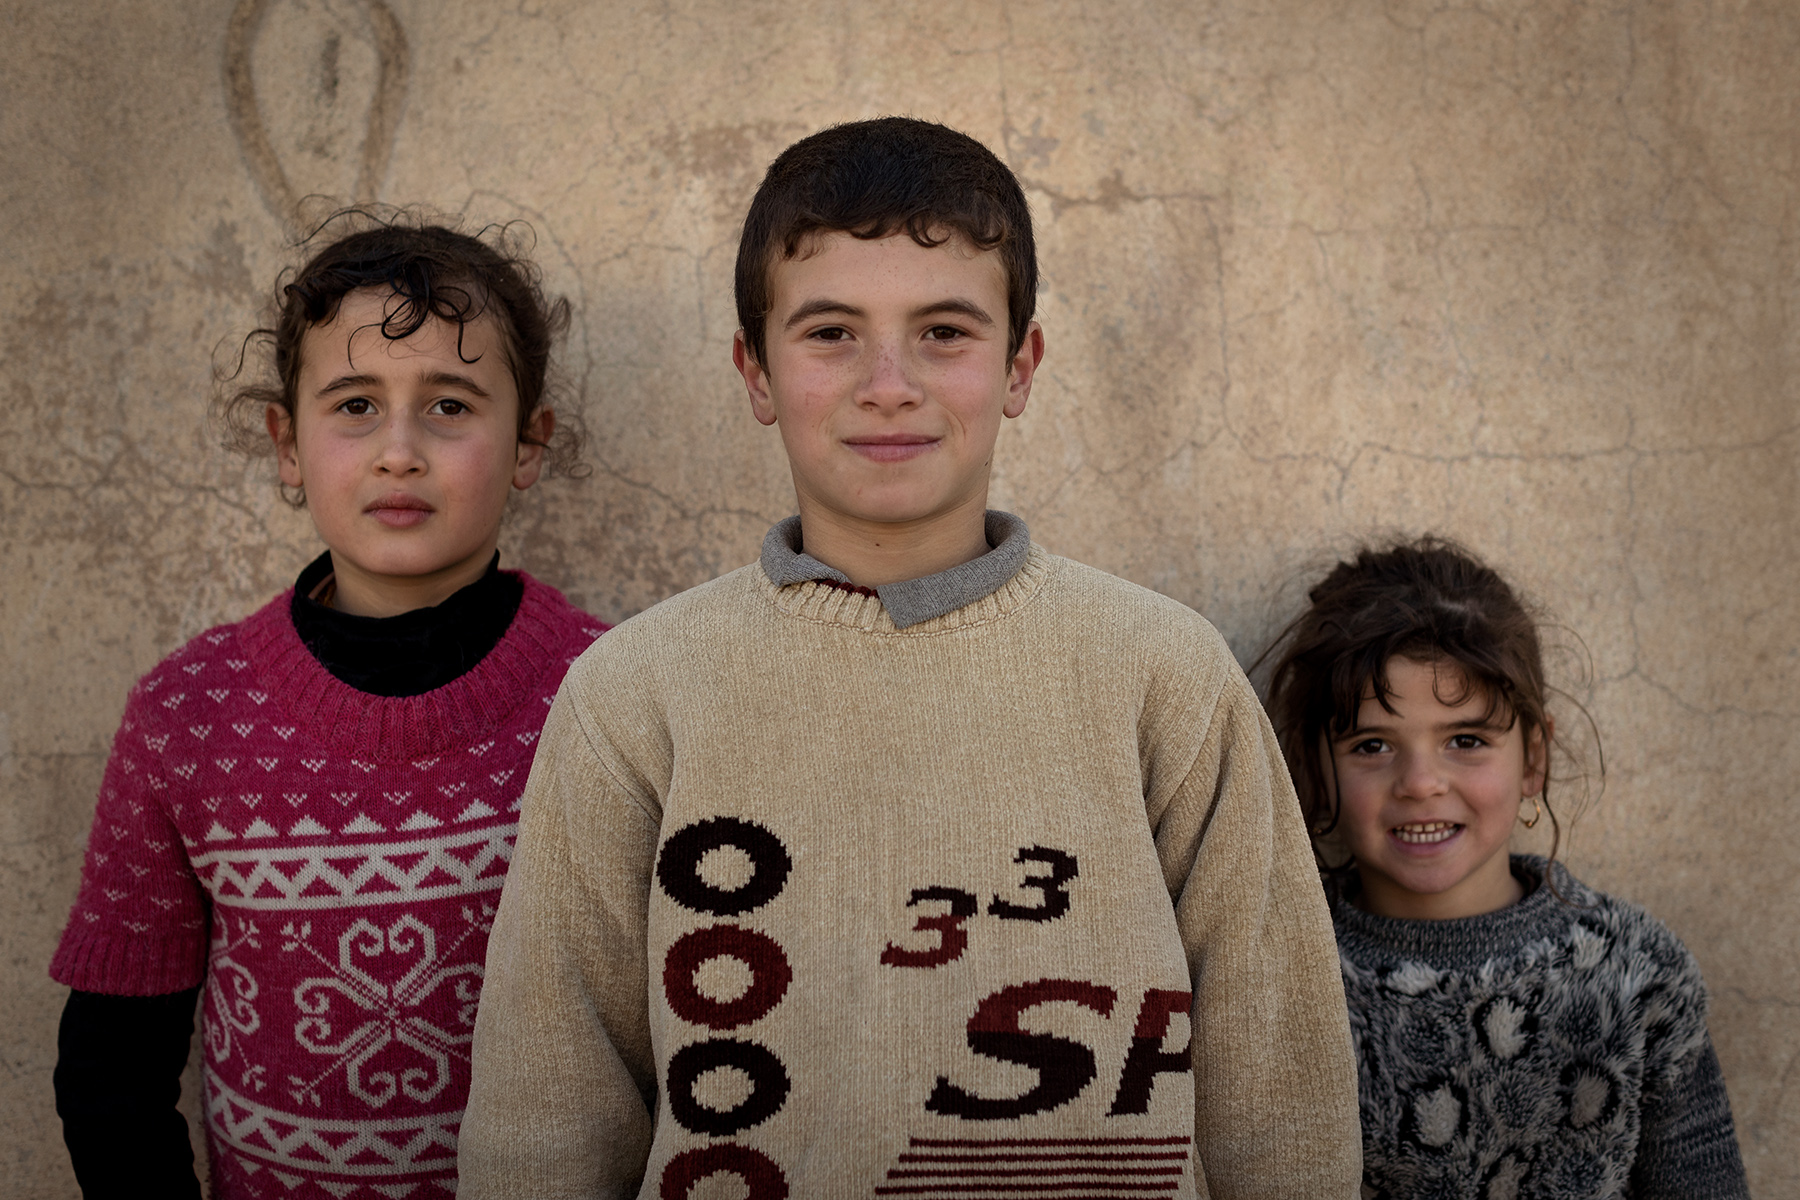 Kids in the street. Mosul, Iraq on Jan. 6, 2017.